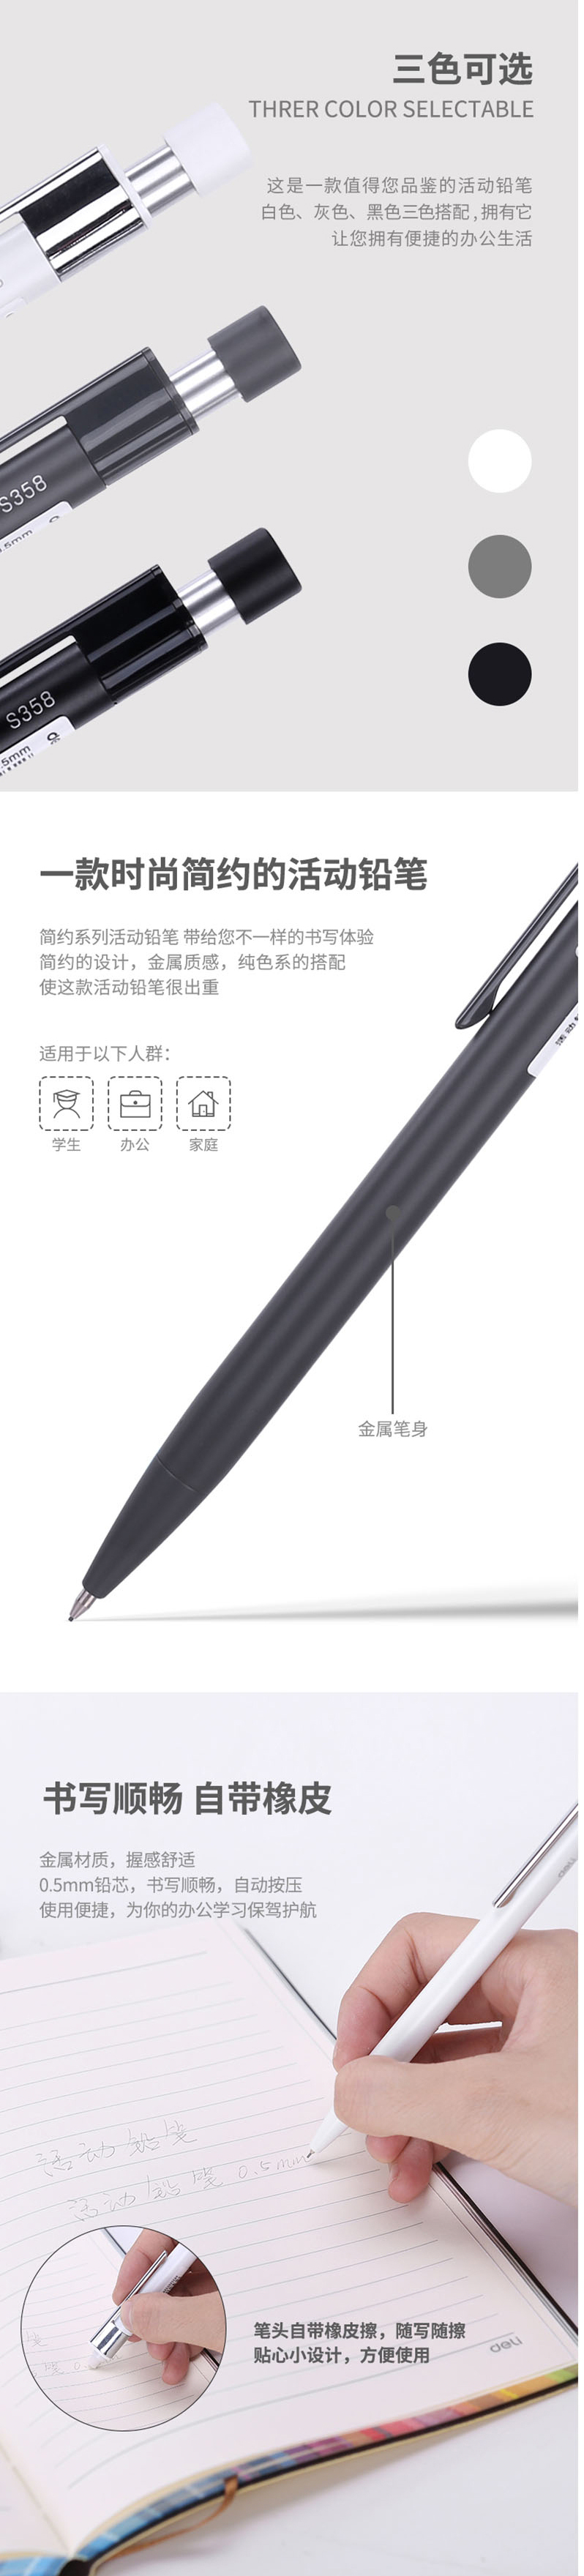 得力S359金属活动铅笔